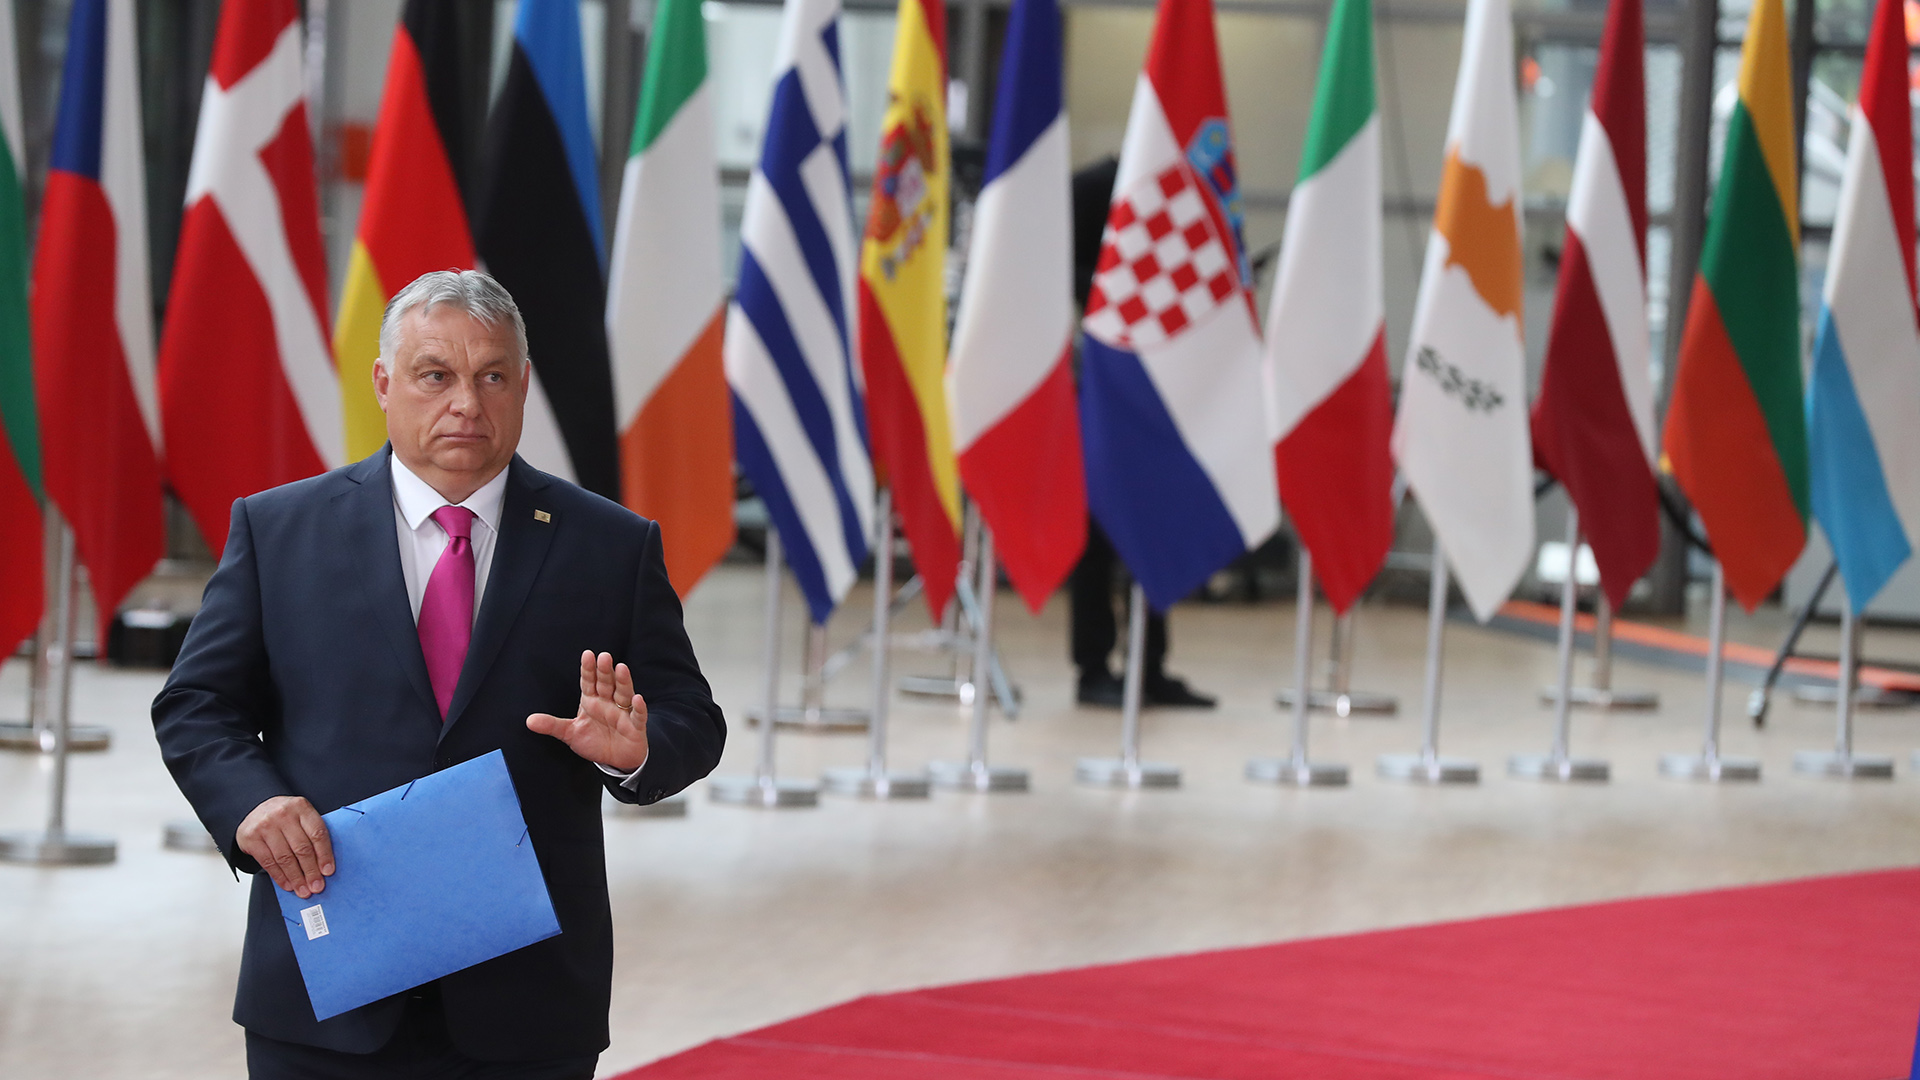 Victor Orban vor Flaggen der EU-Länder | picture alliance/dpa/BELGA